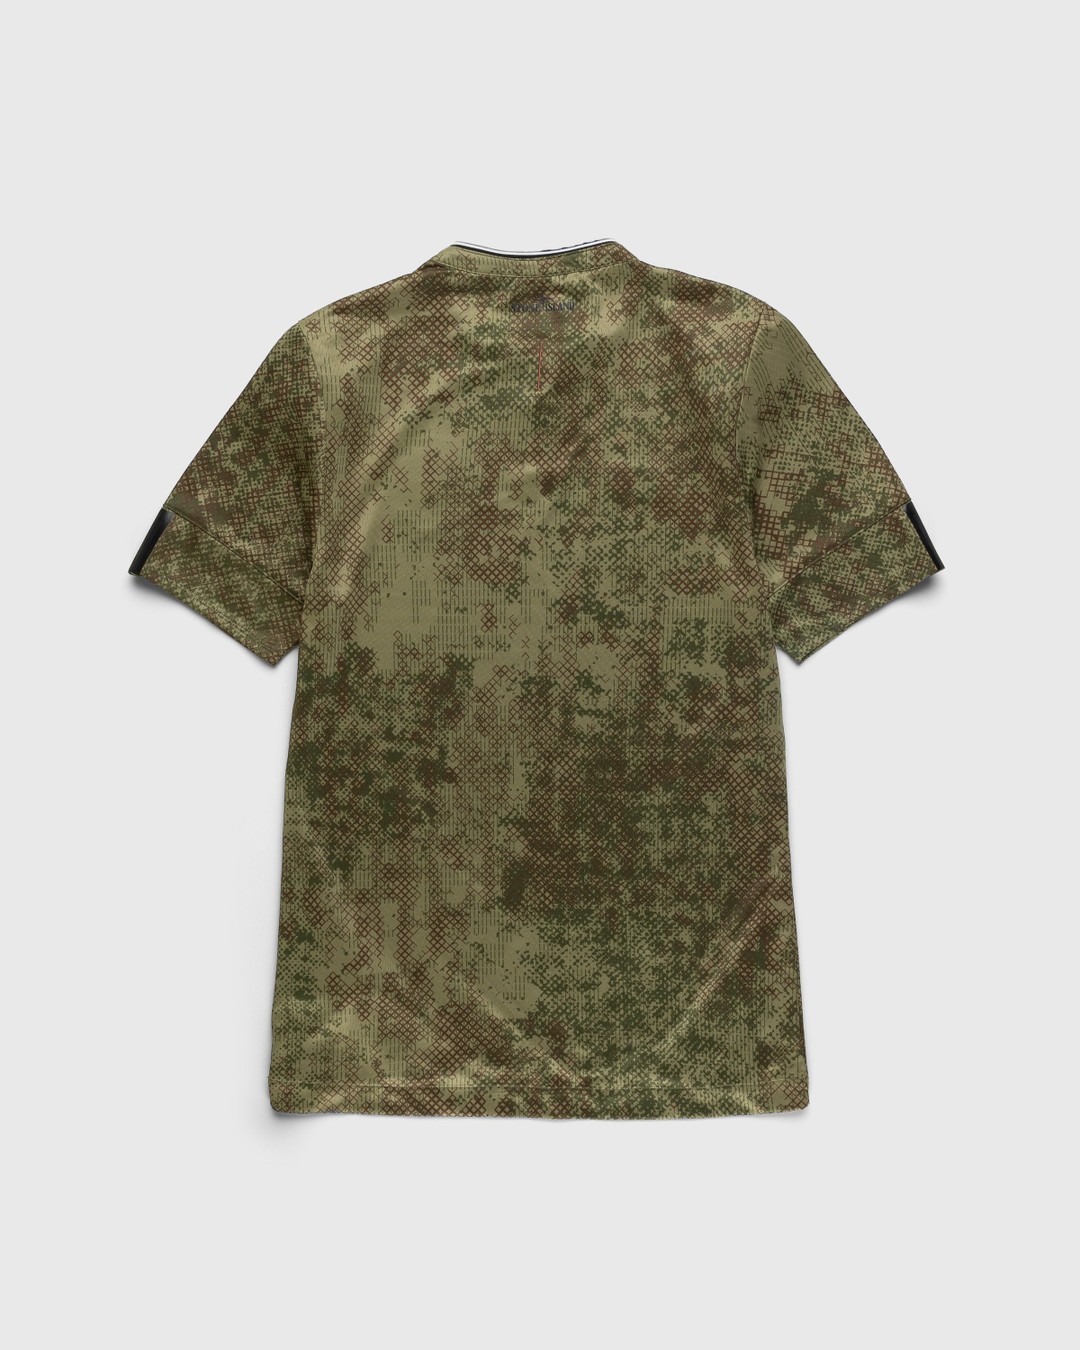 New Balance x Stone Island – Kit Set Green - T-Shirts - Green - Image 4